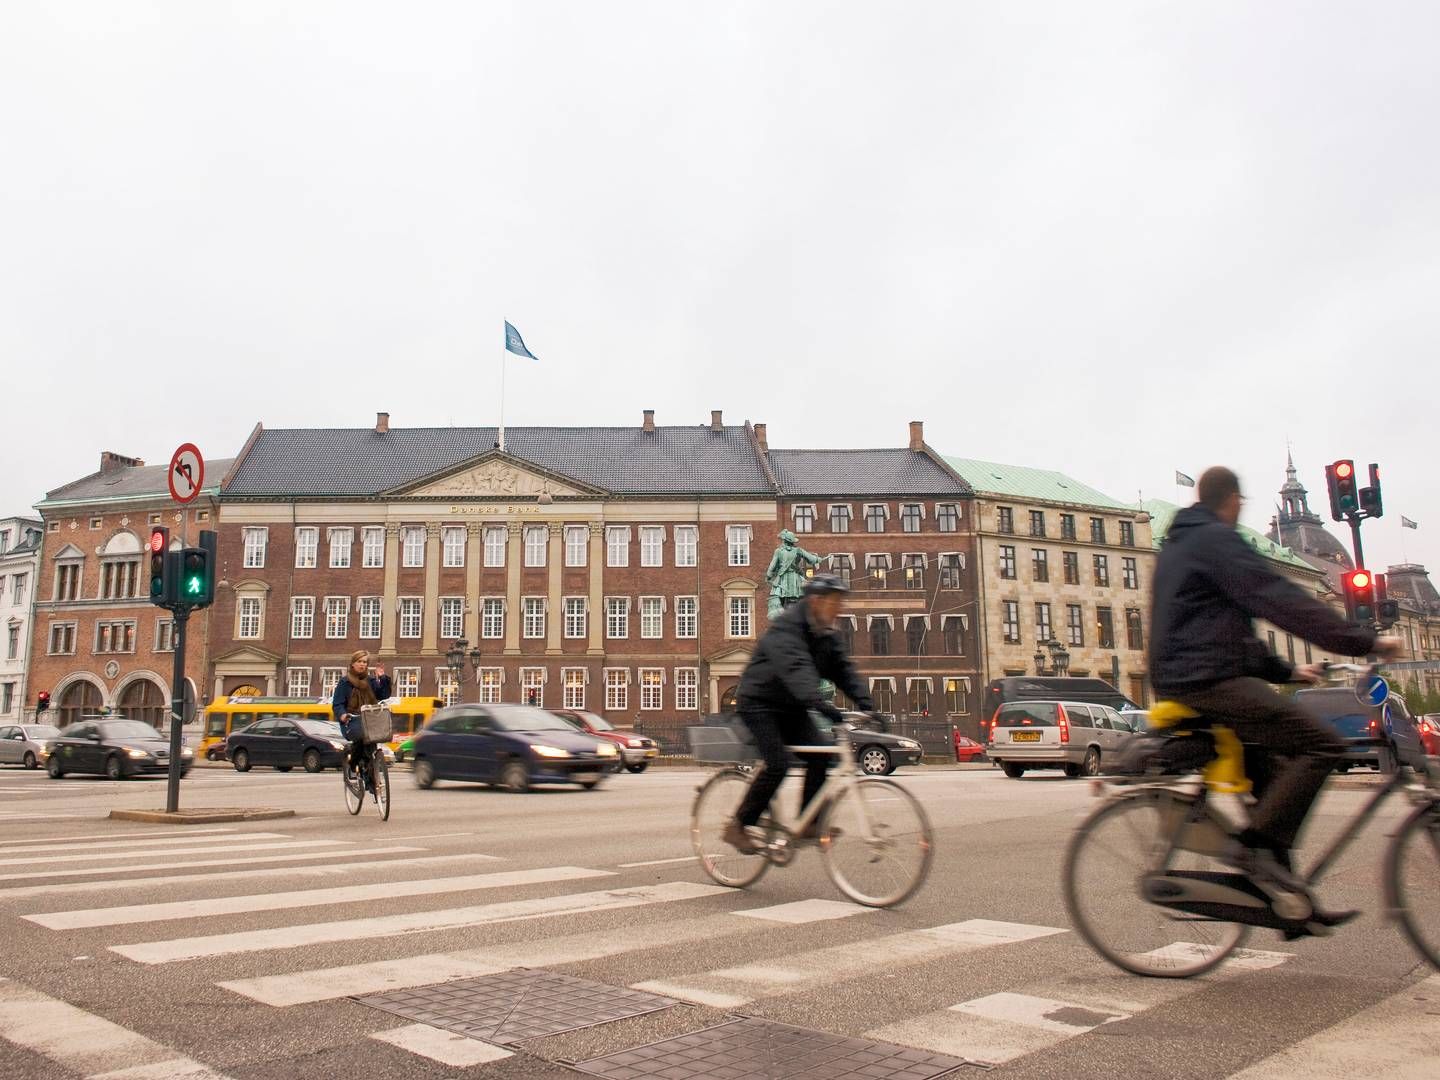 Indenfor kongerigets grænser er Danske Banks udlån vokset, men udviklingen i udenlandske afdelinger trækker ned, så bankens samlede udlånsvækst er negativ. | Foto: Danske Bank/pr